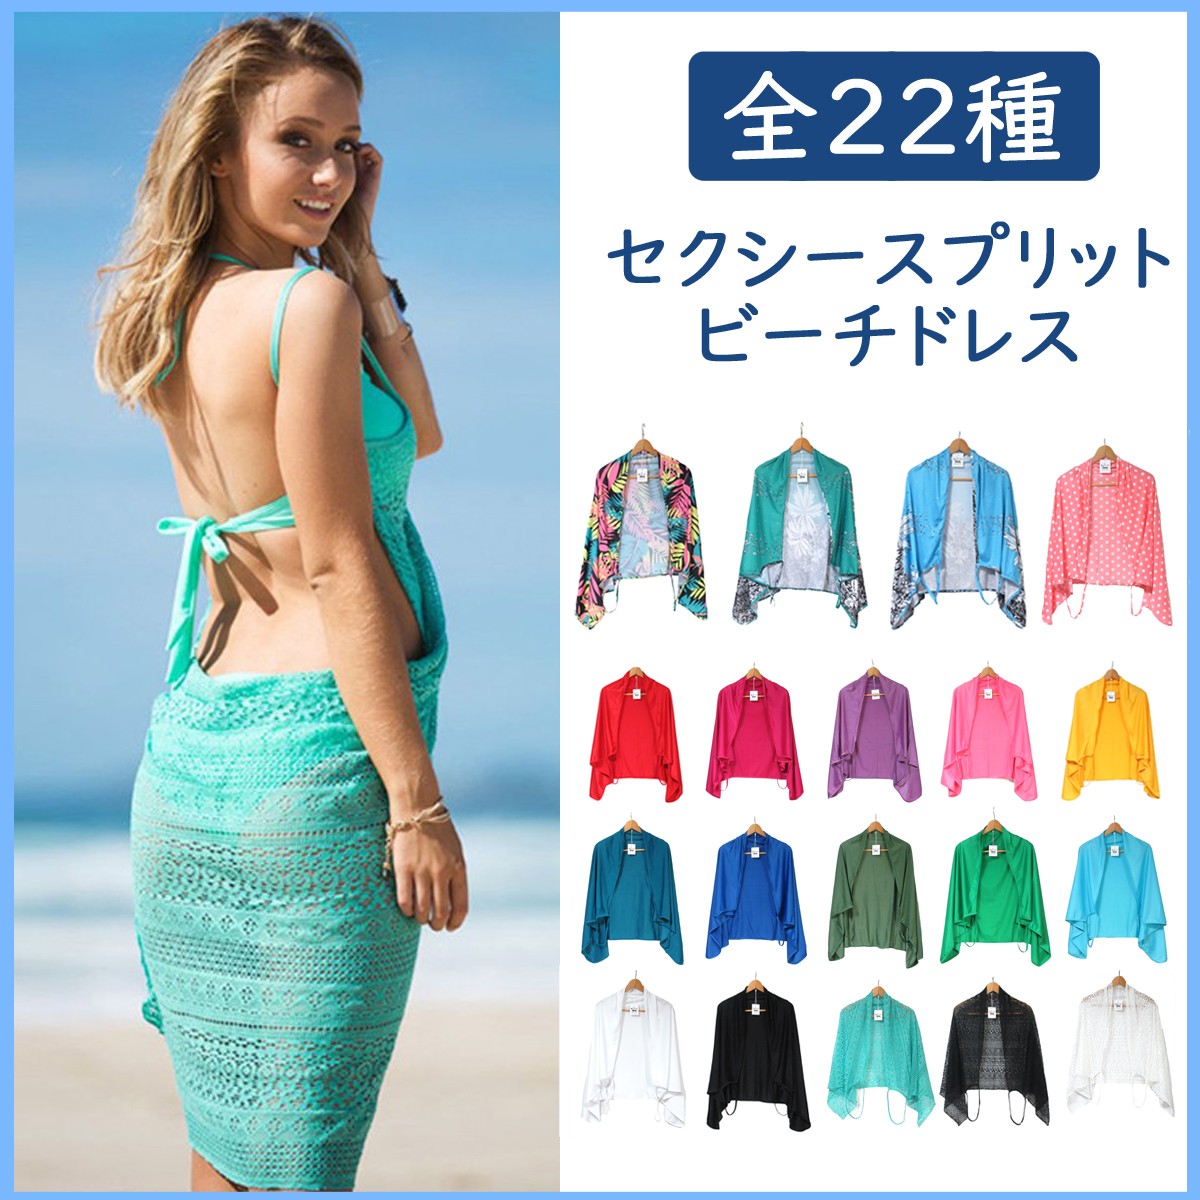  парео пляж платье пляж одежда покрытие выше женский купальный костюм sexy split бикини покрытие скорость .UV cut body type покрытие 